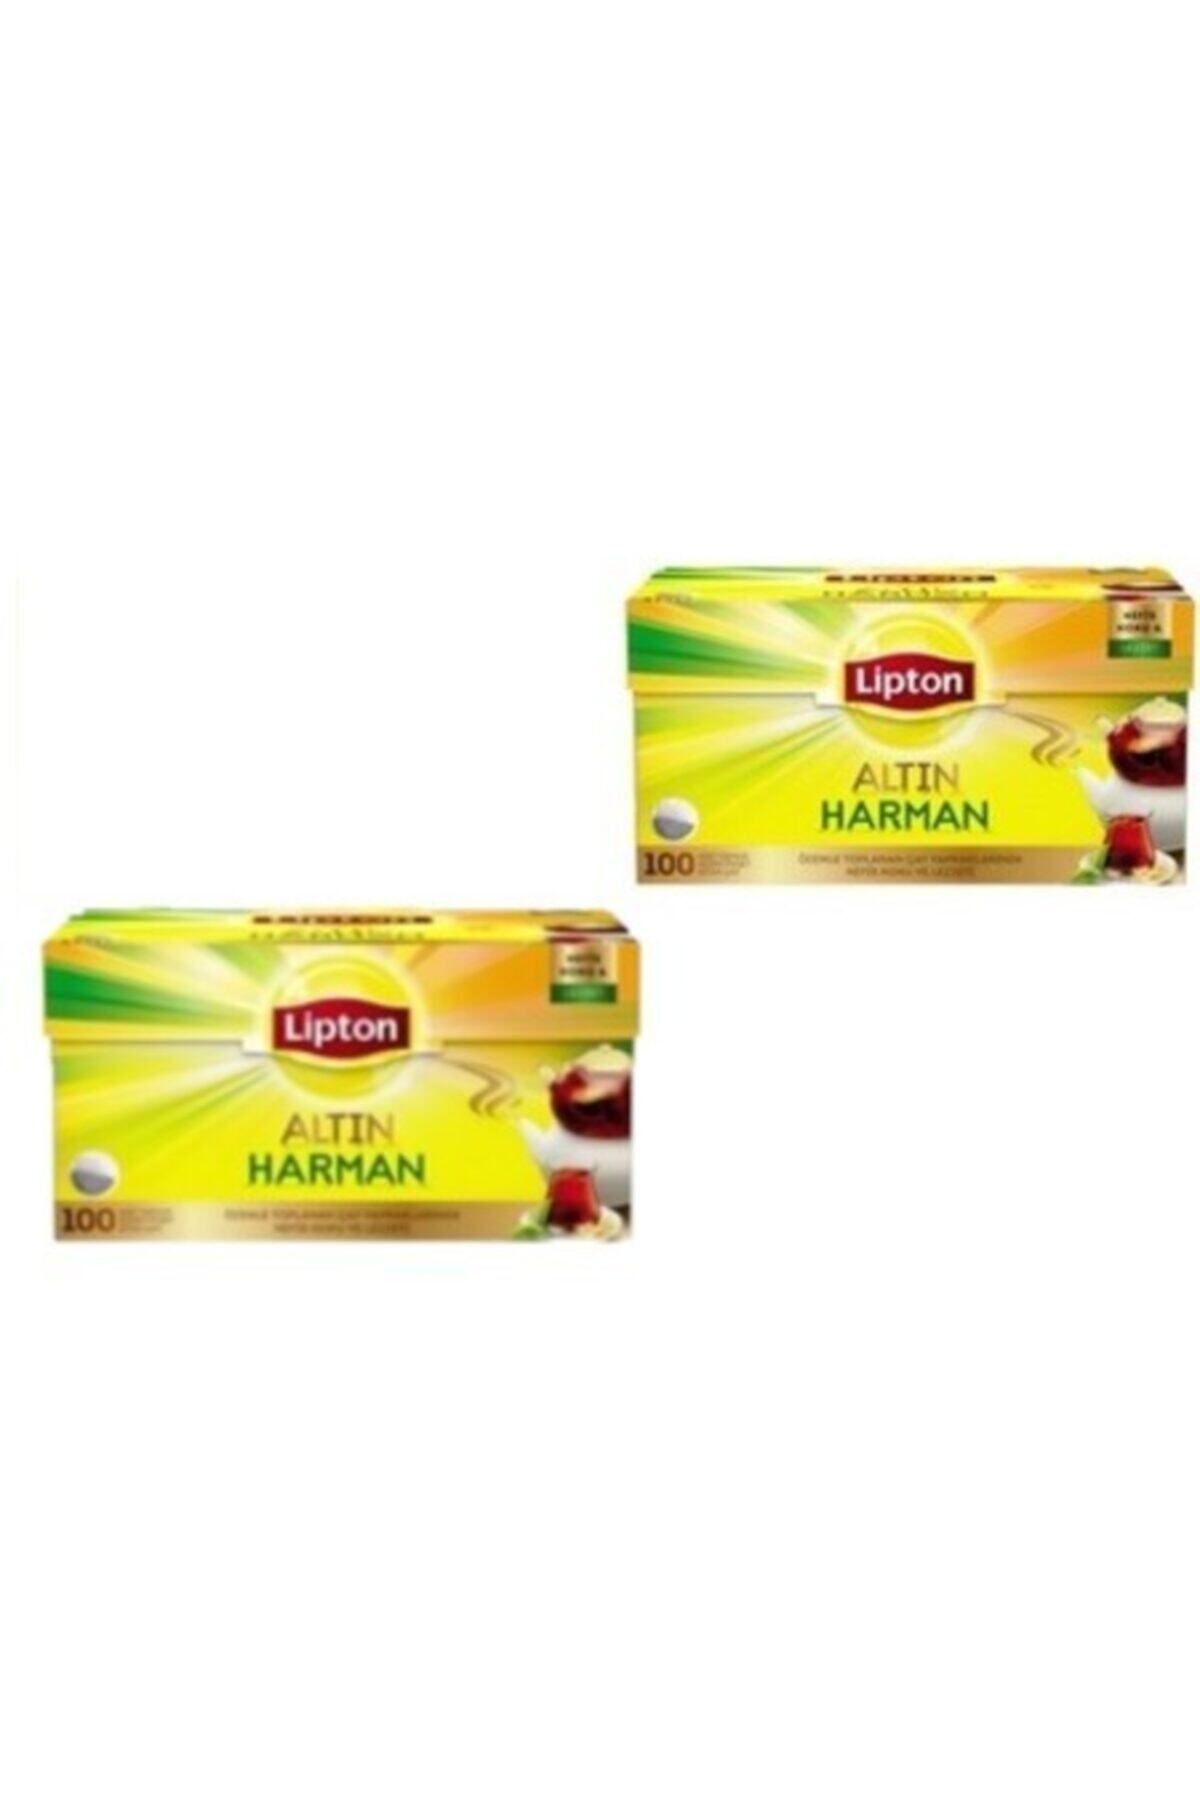 Lipton Altın Harman Demlik Poşet Çay 100'lü 2 Paket